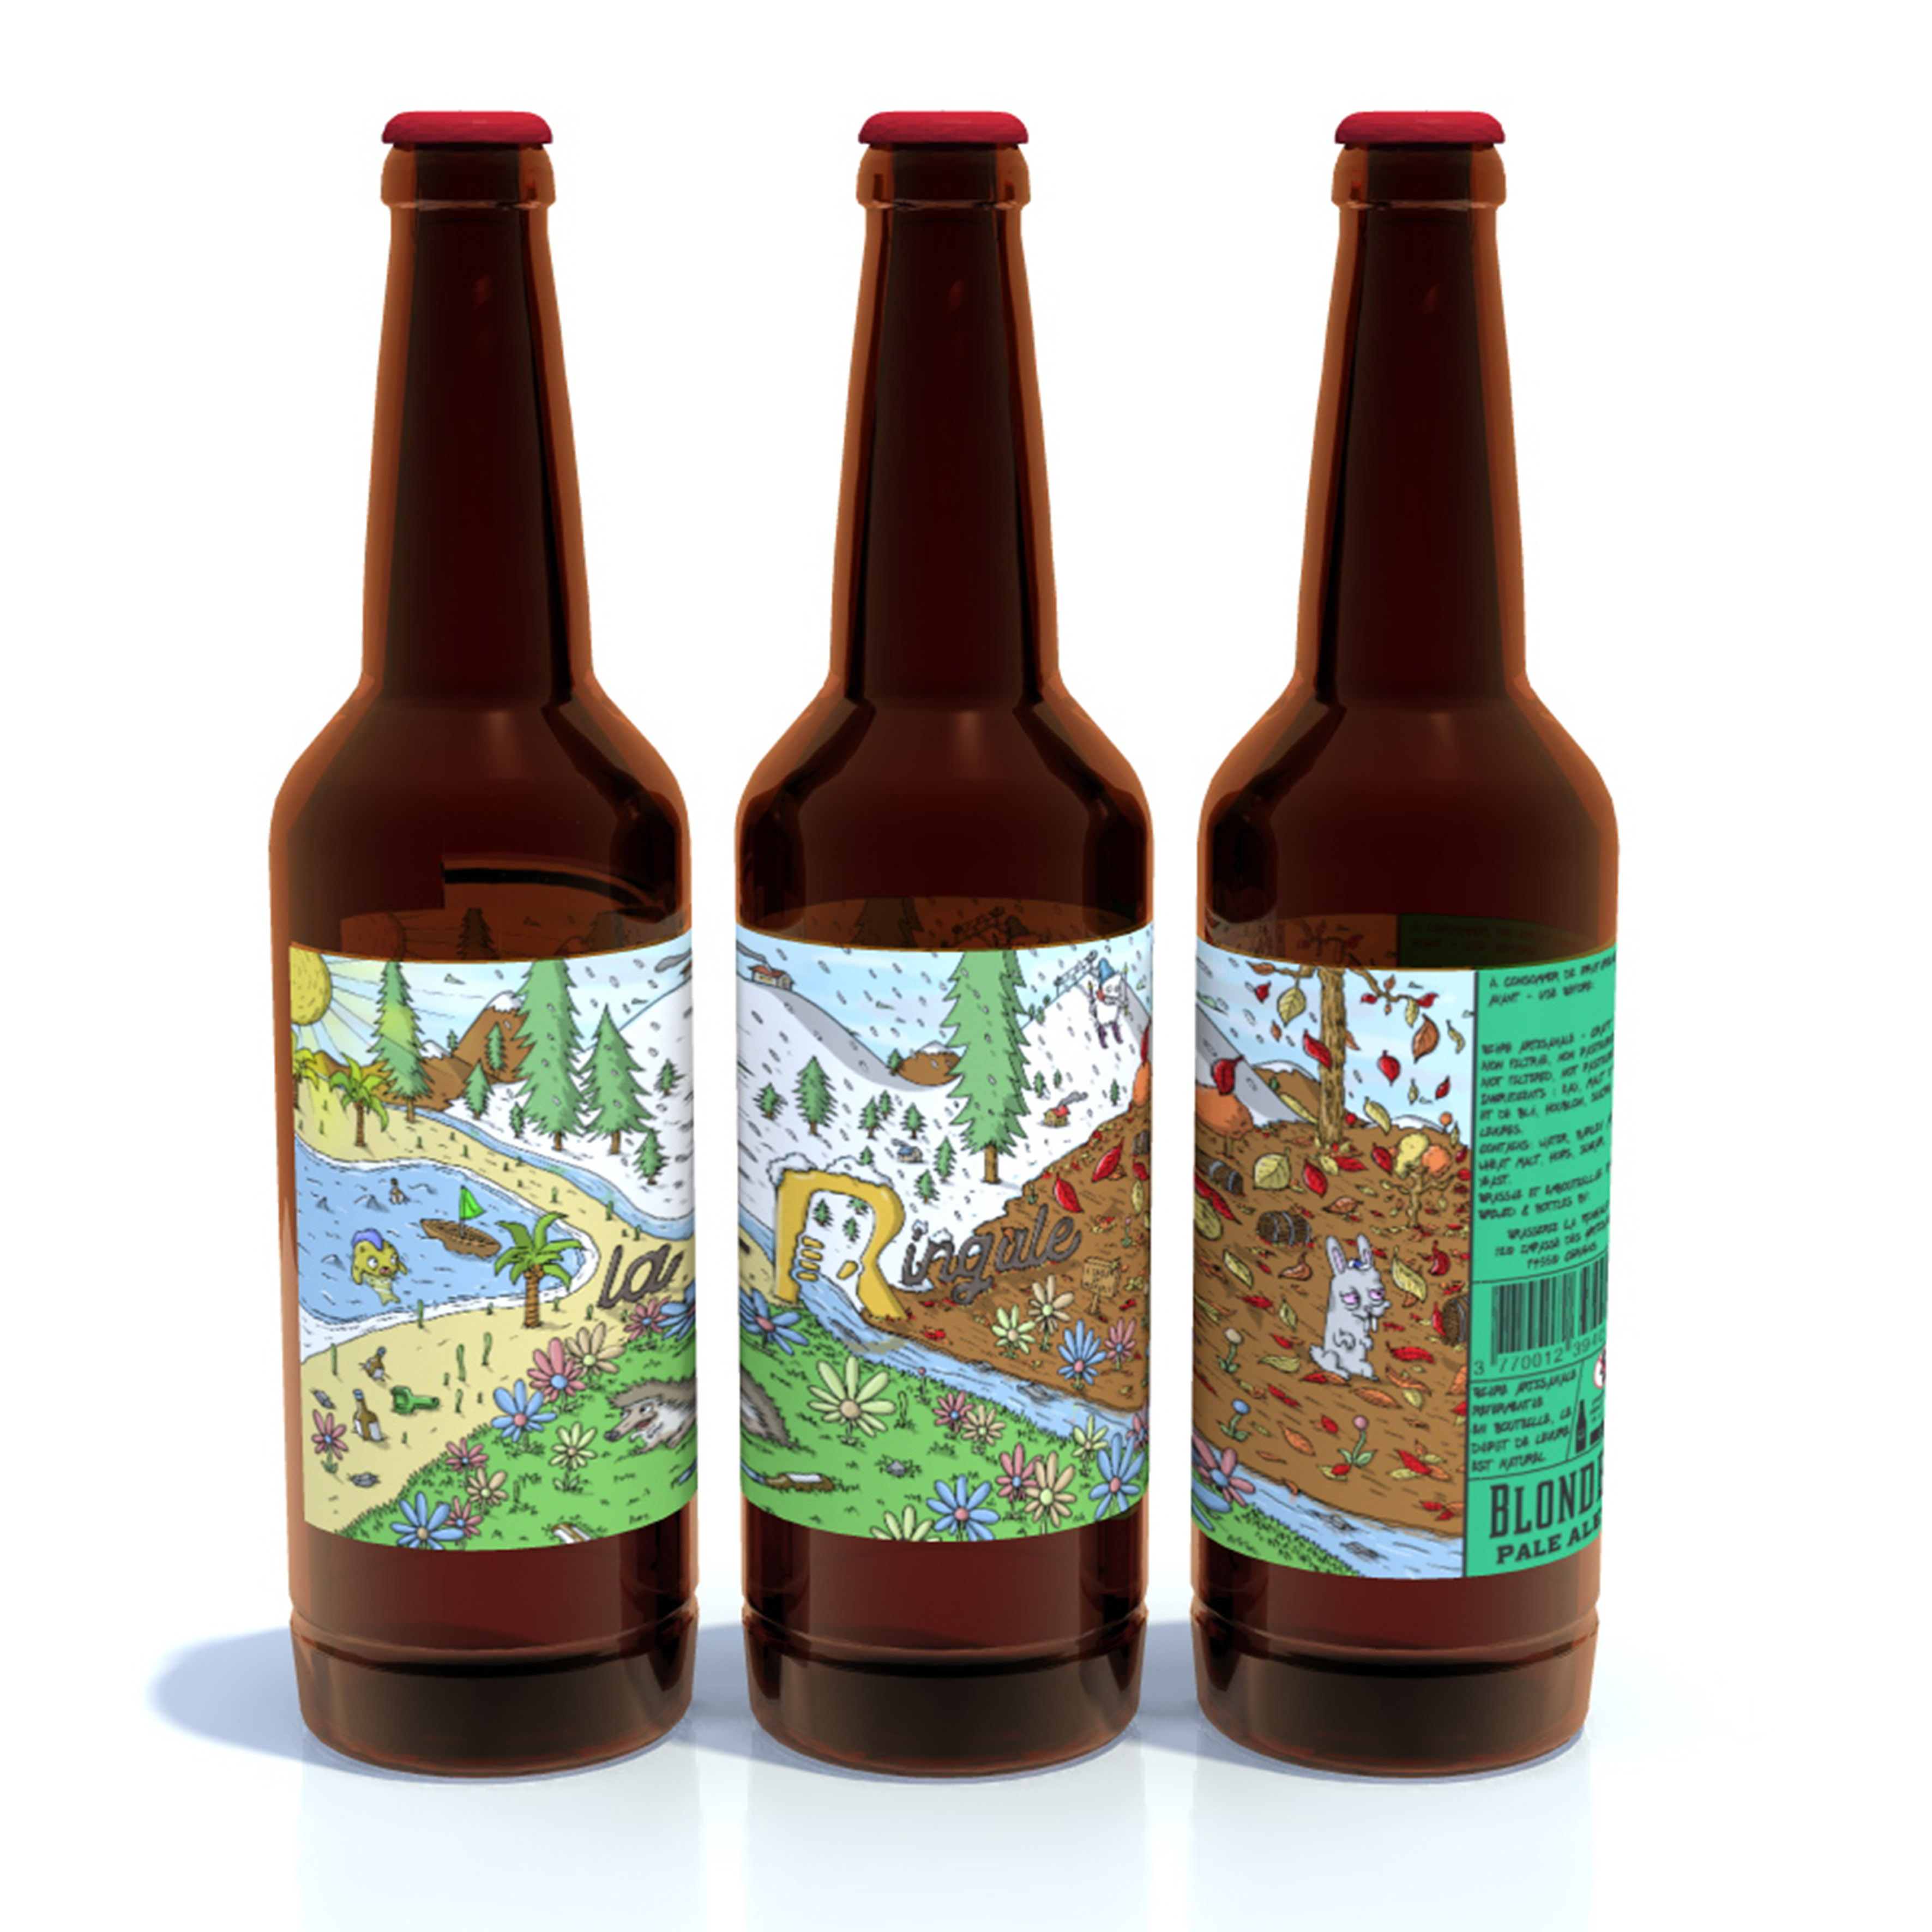 Conception des étiquettes des bouteilles de bière spéciales pour la Ringale-Bar brasserie à Cervens